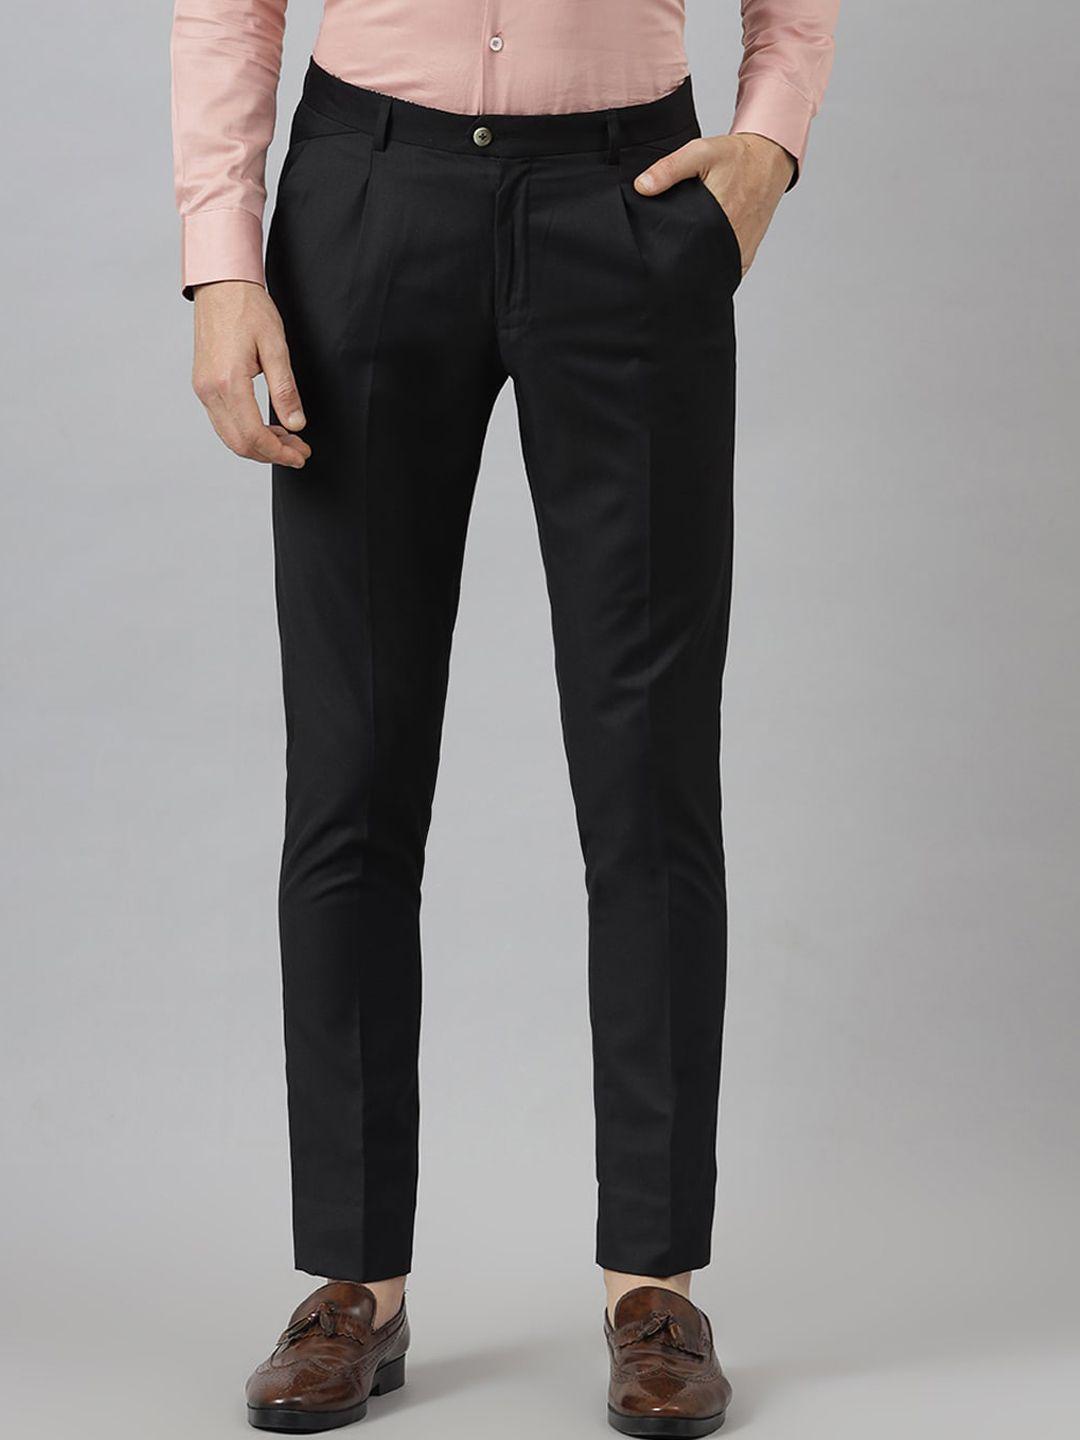 mr button men black solid slim fit trousers